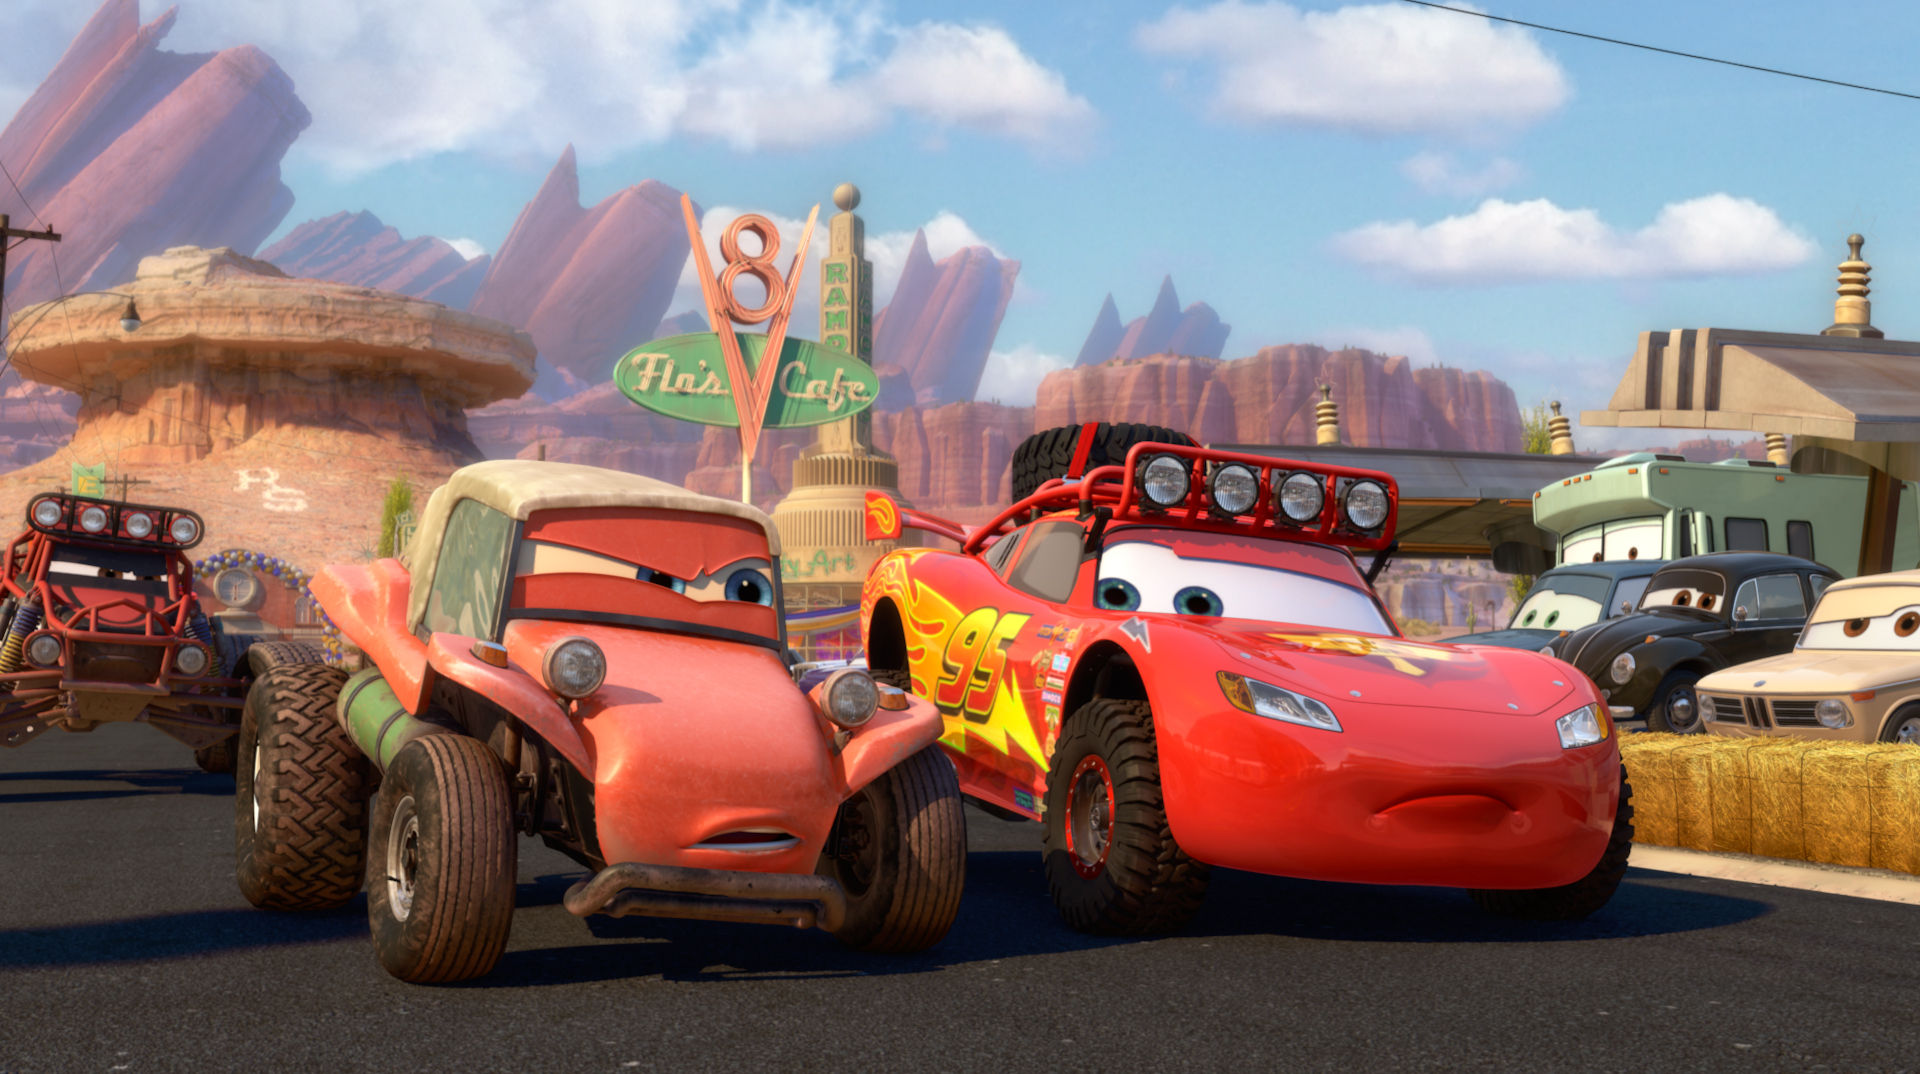 International, disney pixar cars: Film Cars 3 Tengah Diproses, Siap Tayang Juni 2017